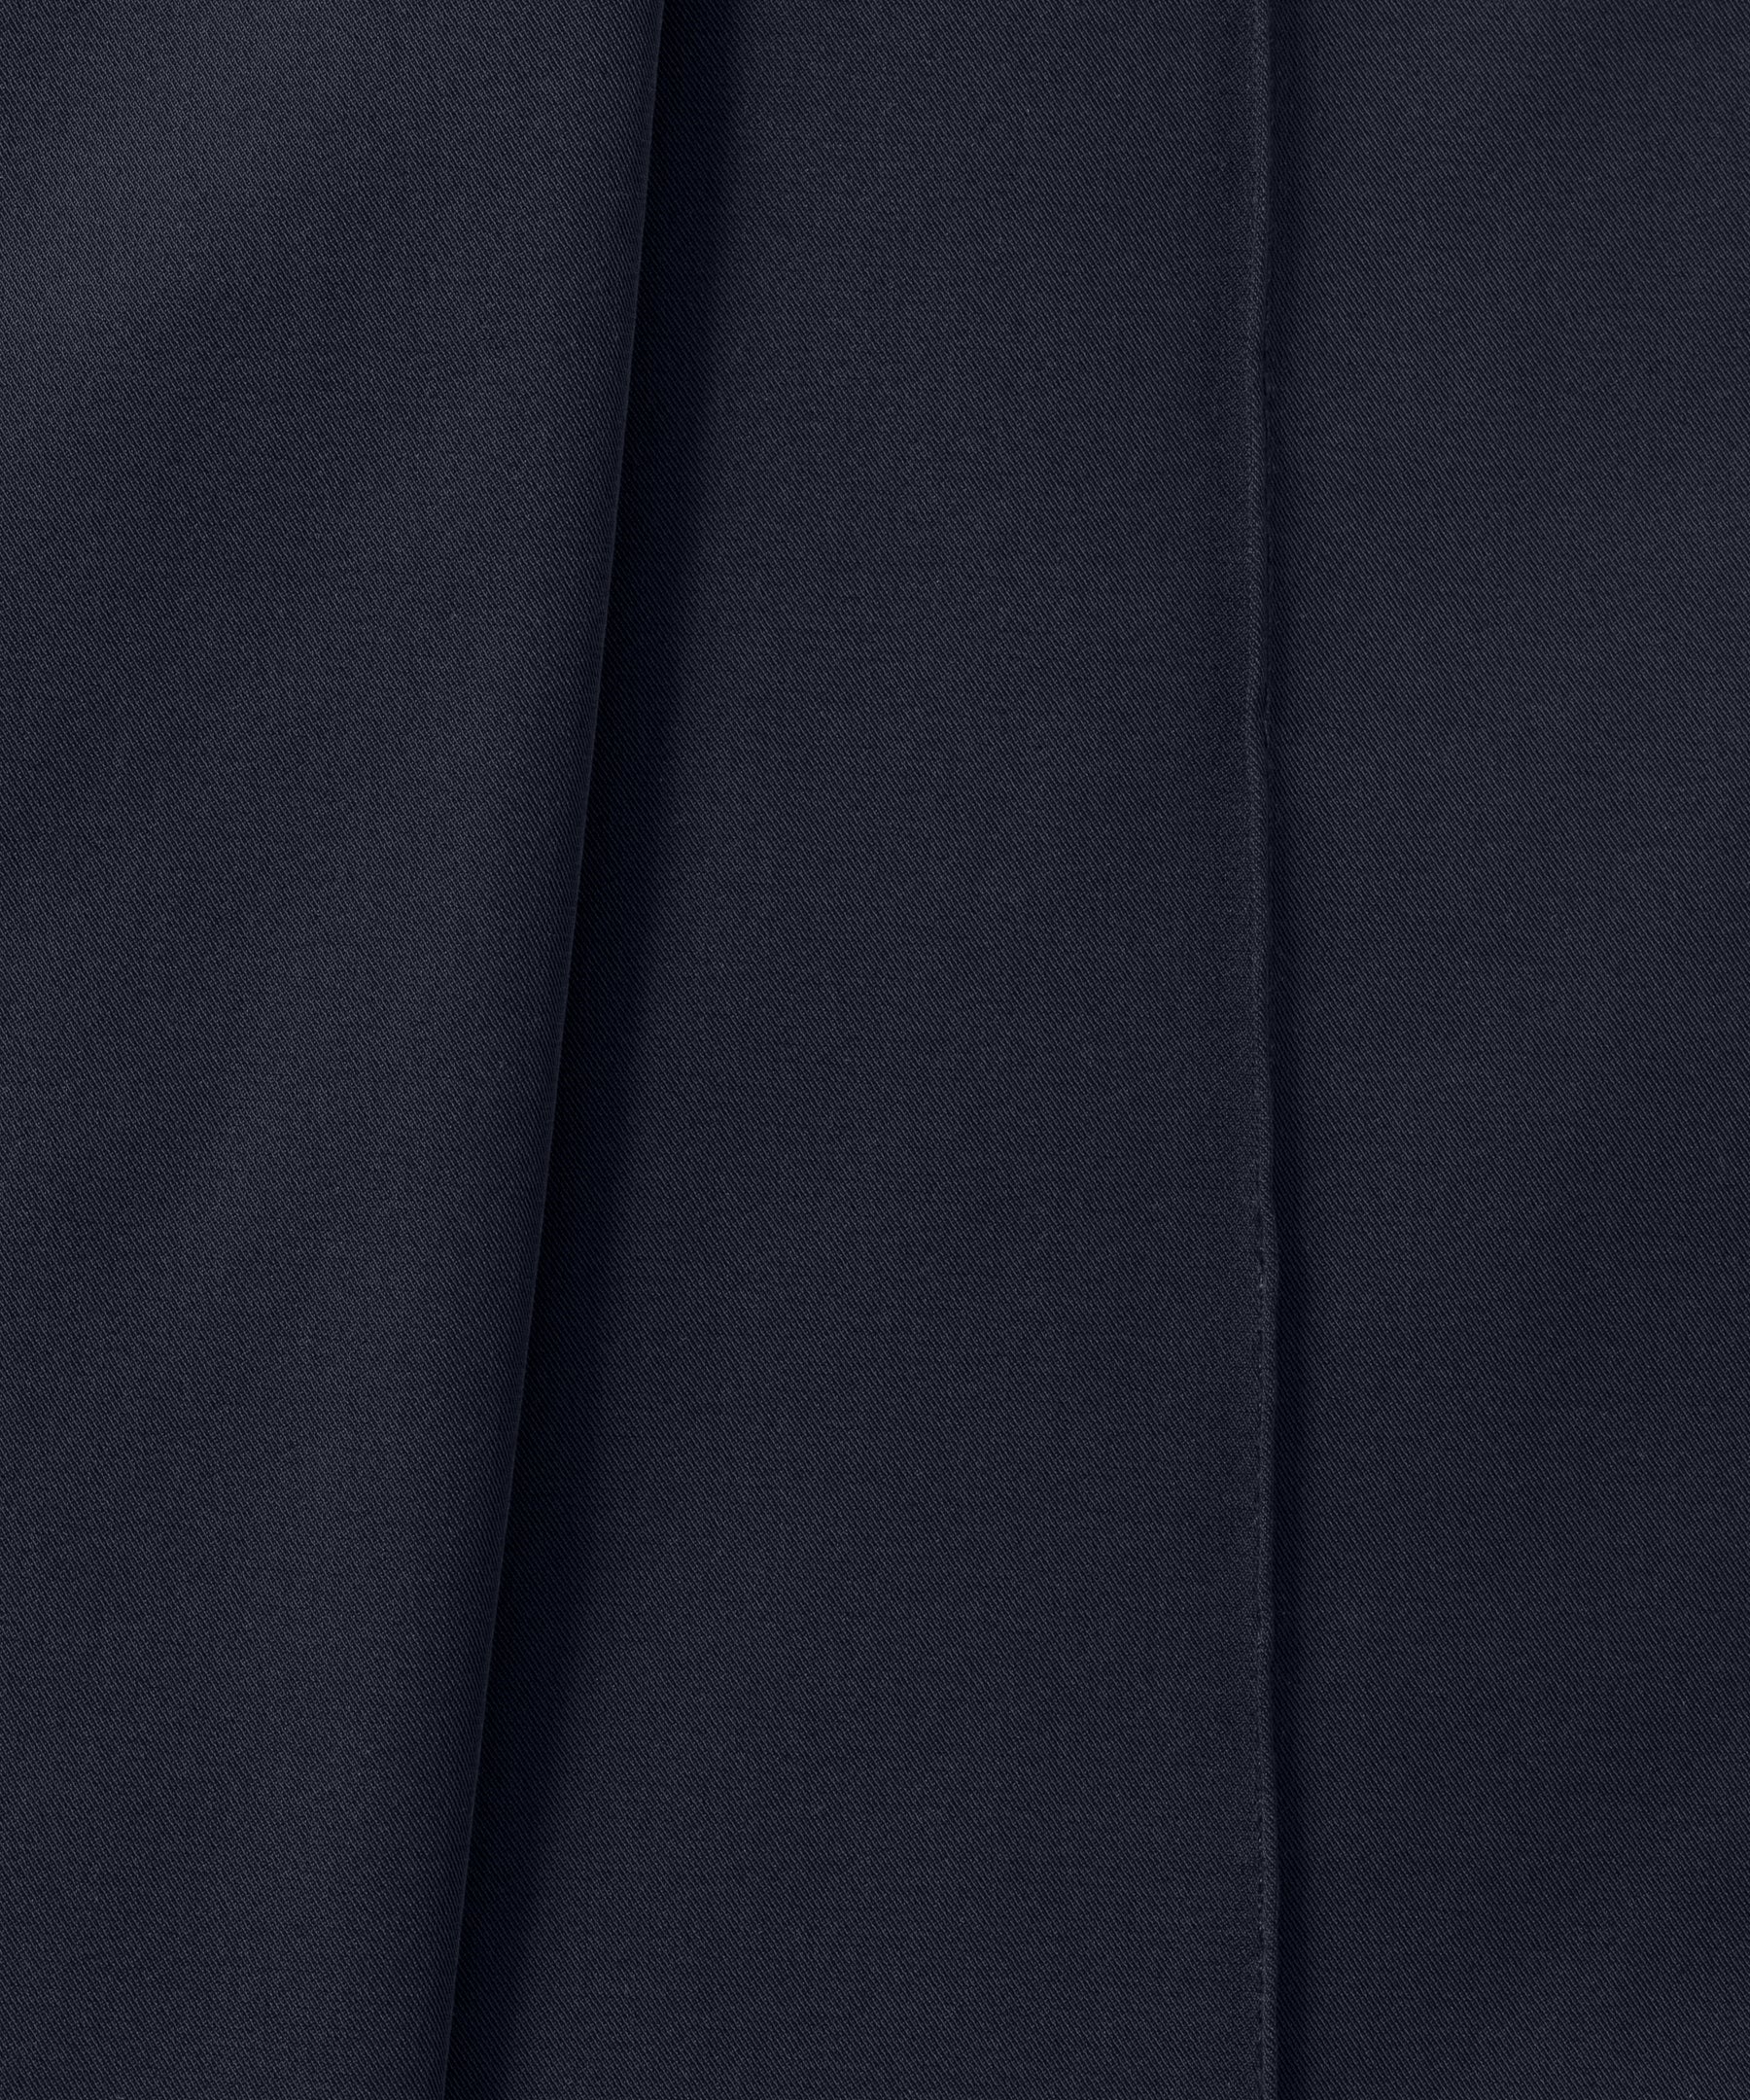 Pantalon léger coupe droite en polyamide: Bleu marine